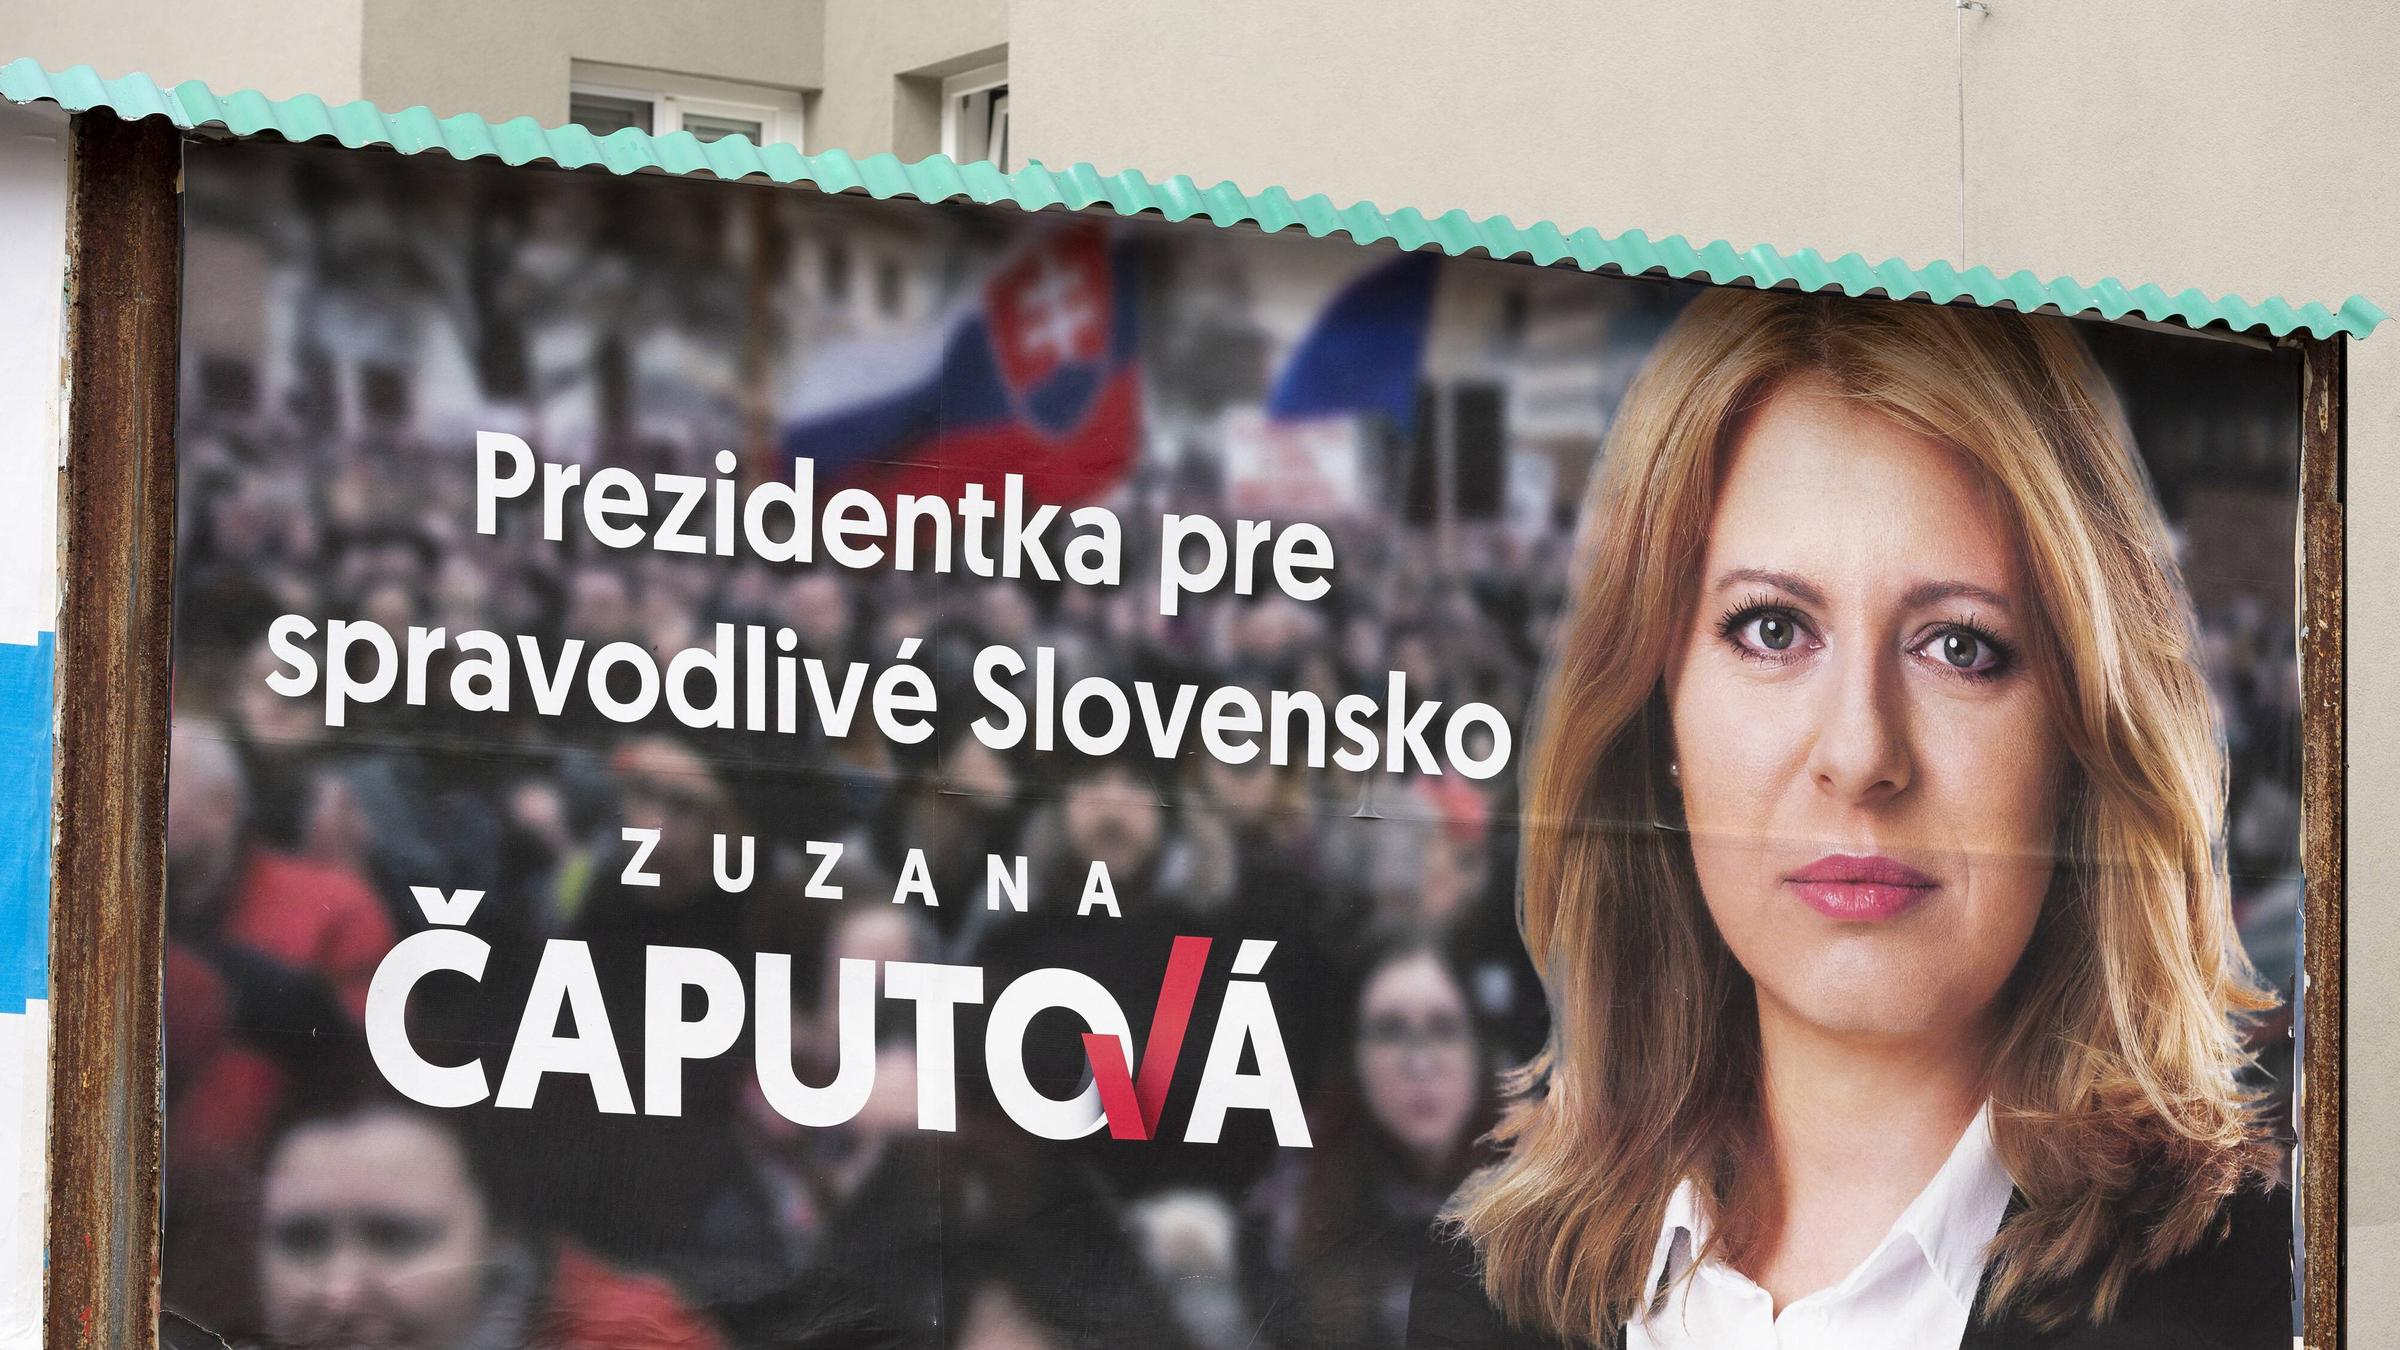 Wahlplakat Präsidentsschaftswahlen 2019 Slowakei, Zuzana Caputova